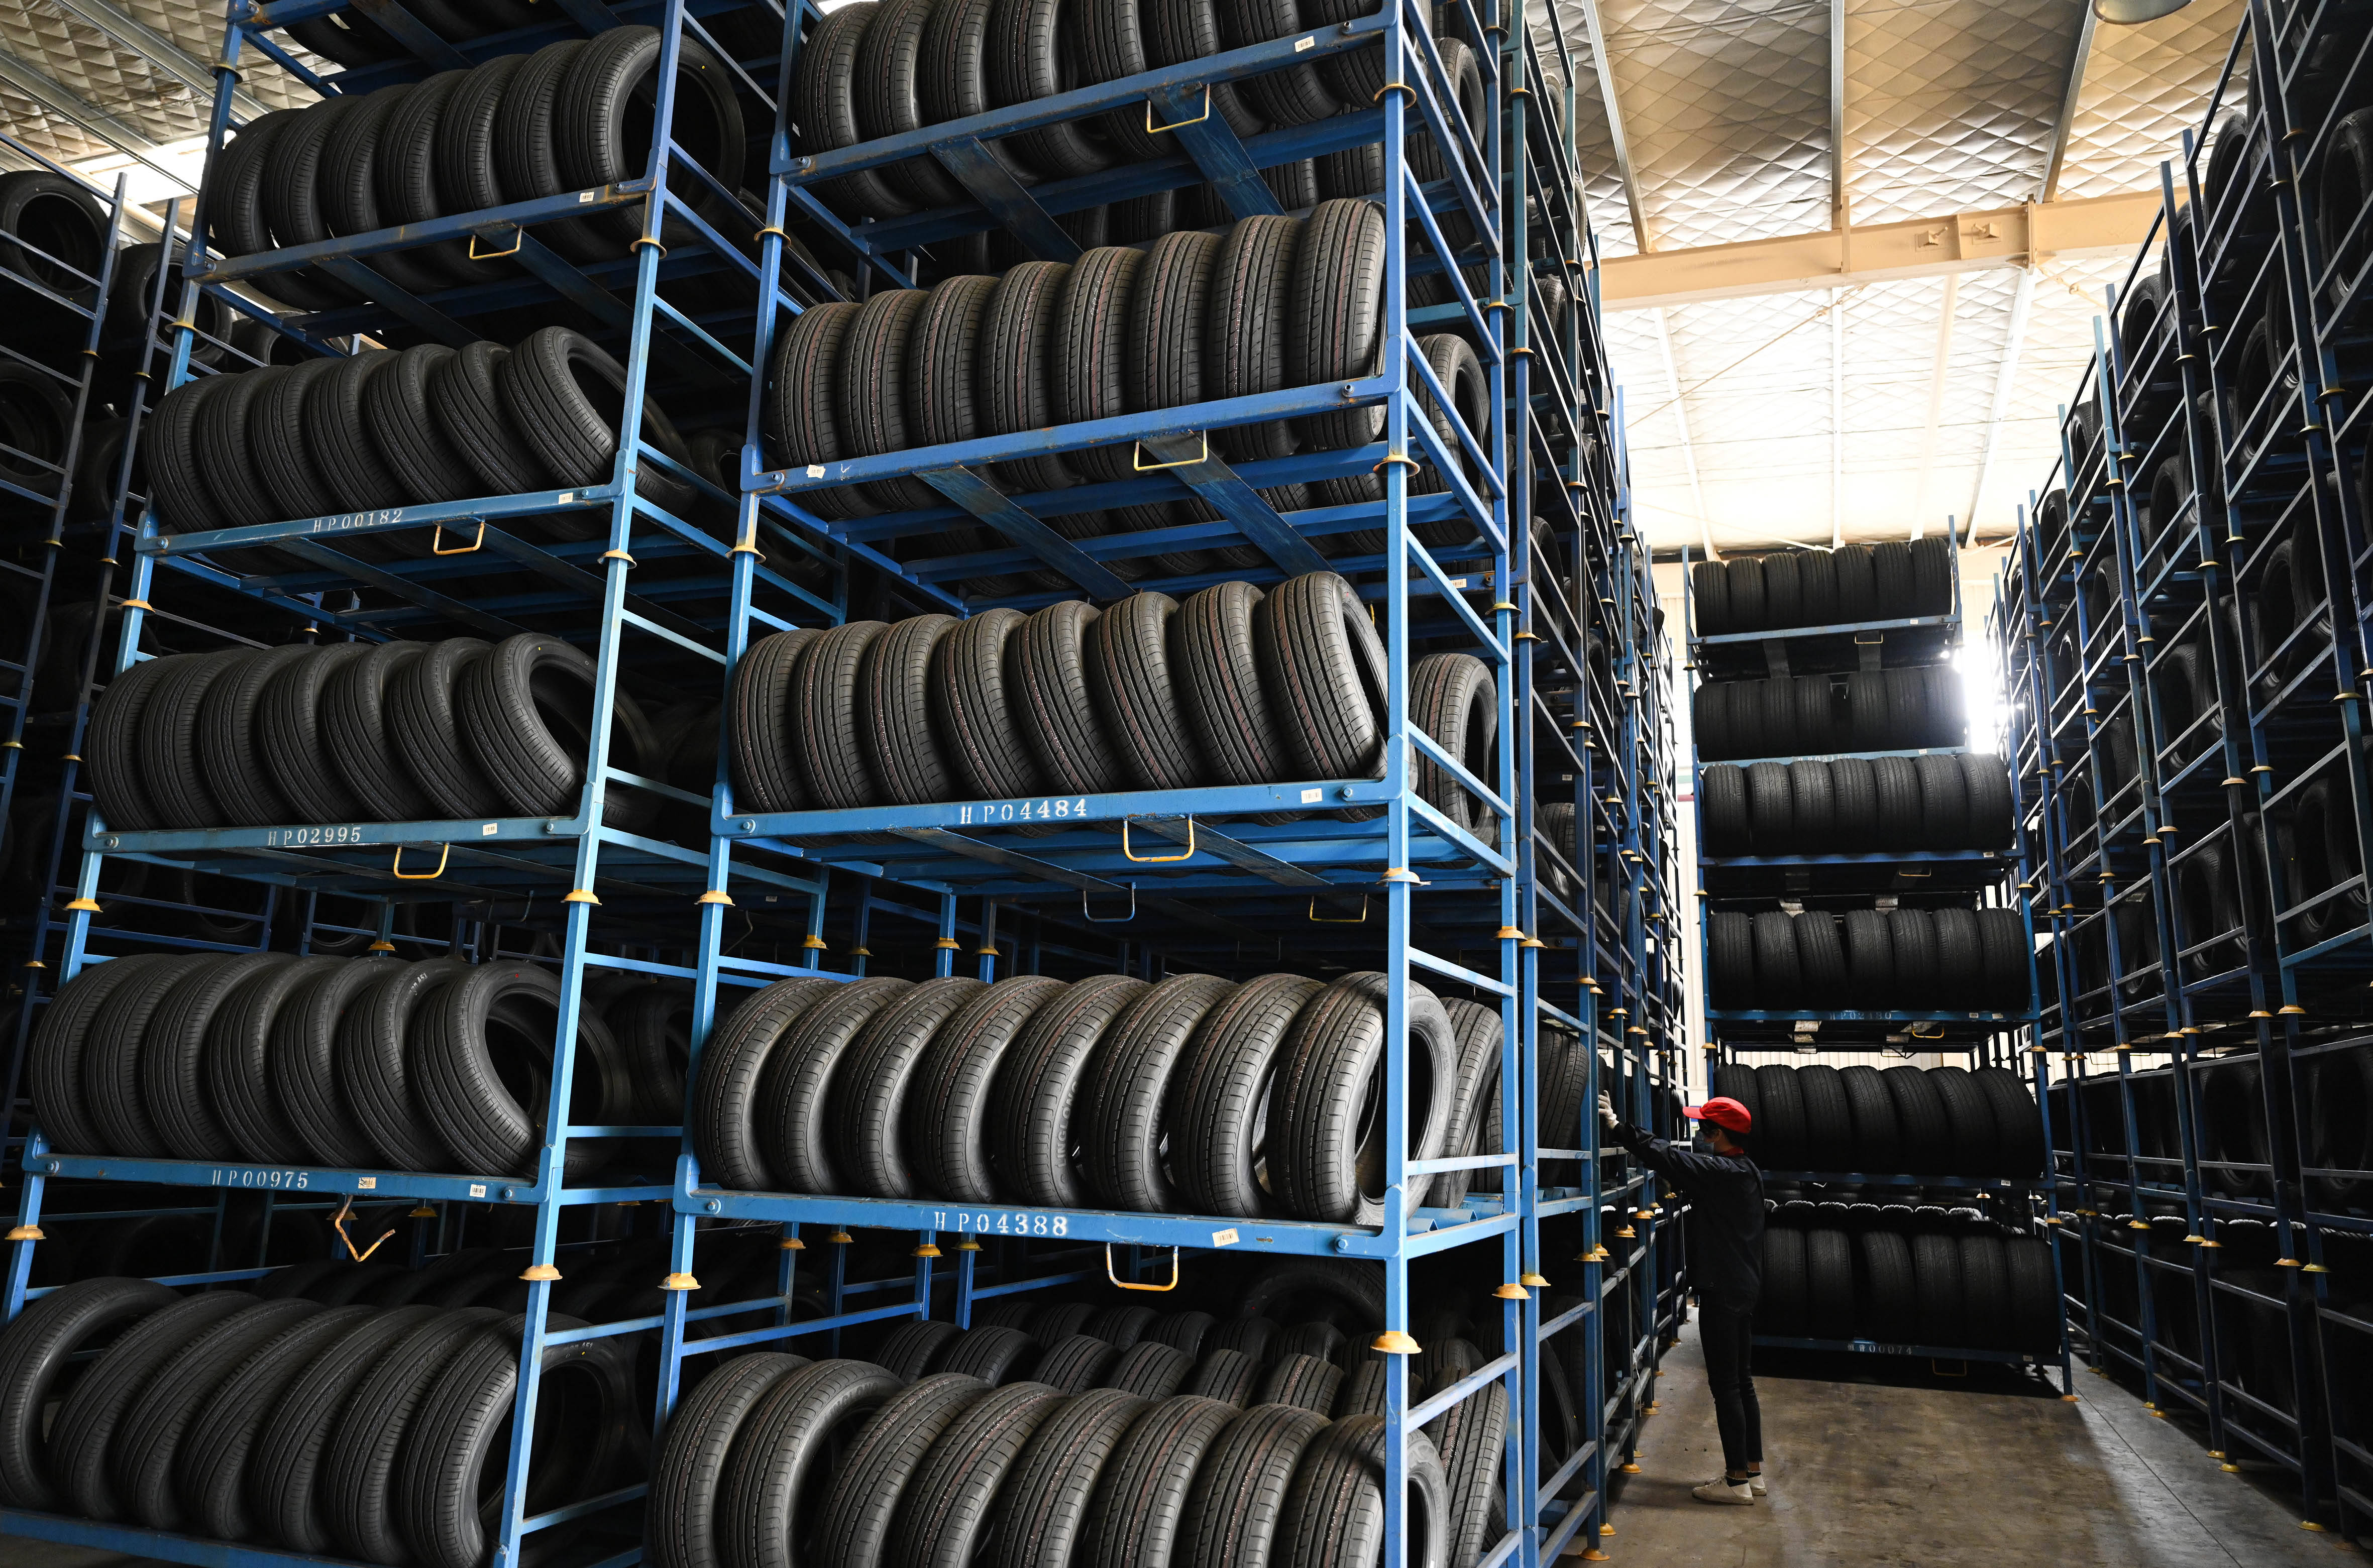 2月22日,在广西柳州一家汽车轮胎企业,工人在仓库里对即将出仓的轮胎